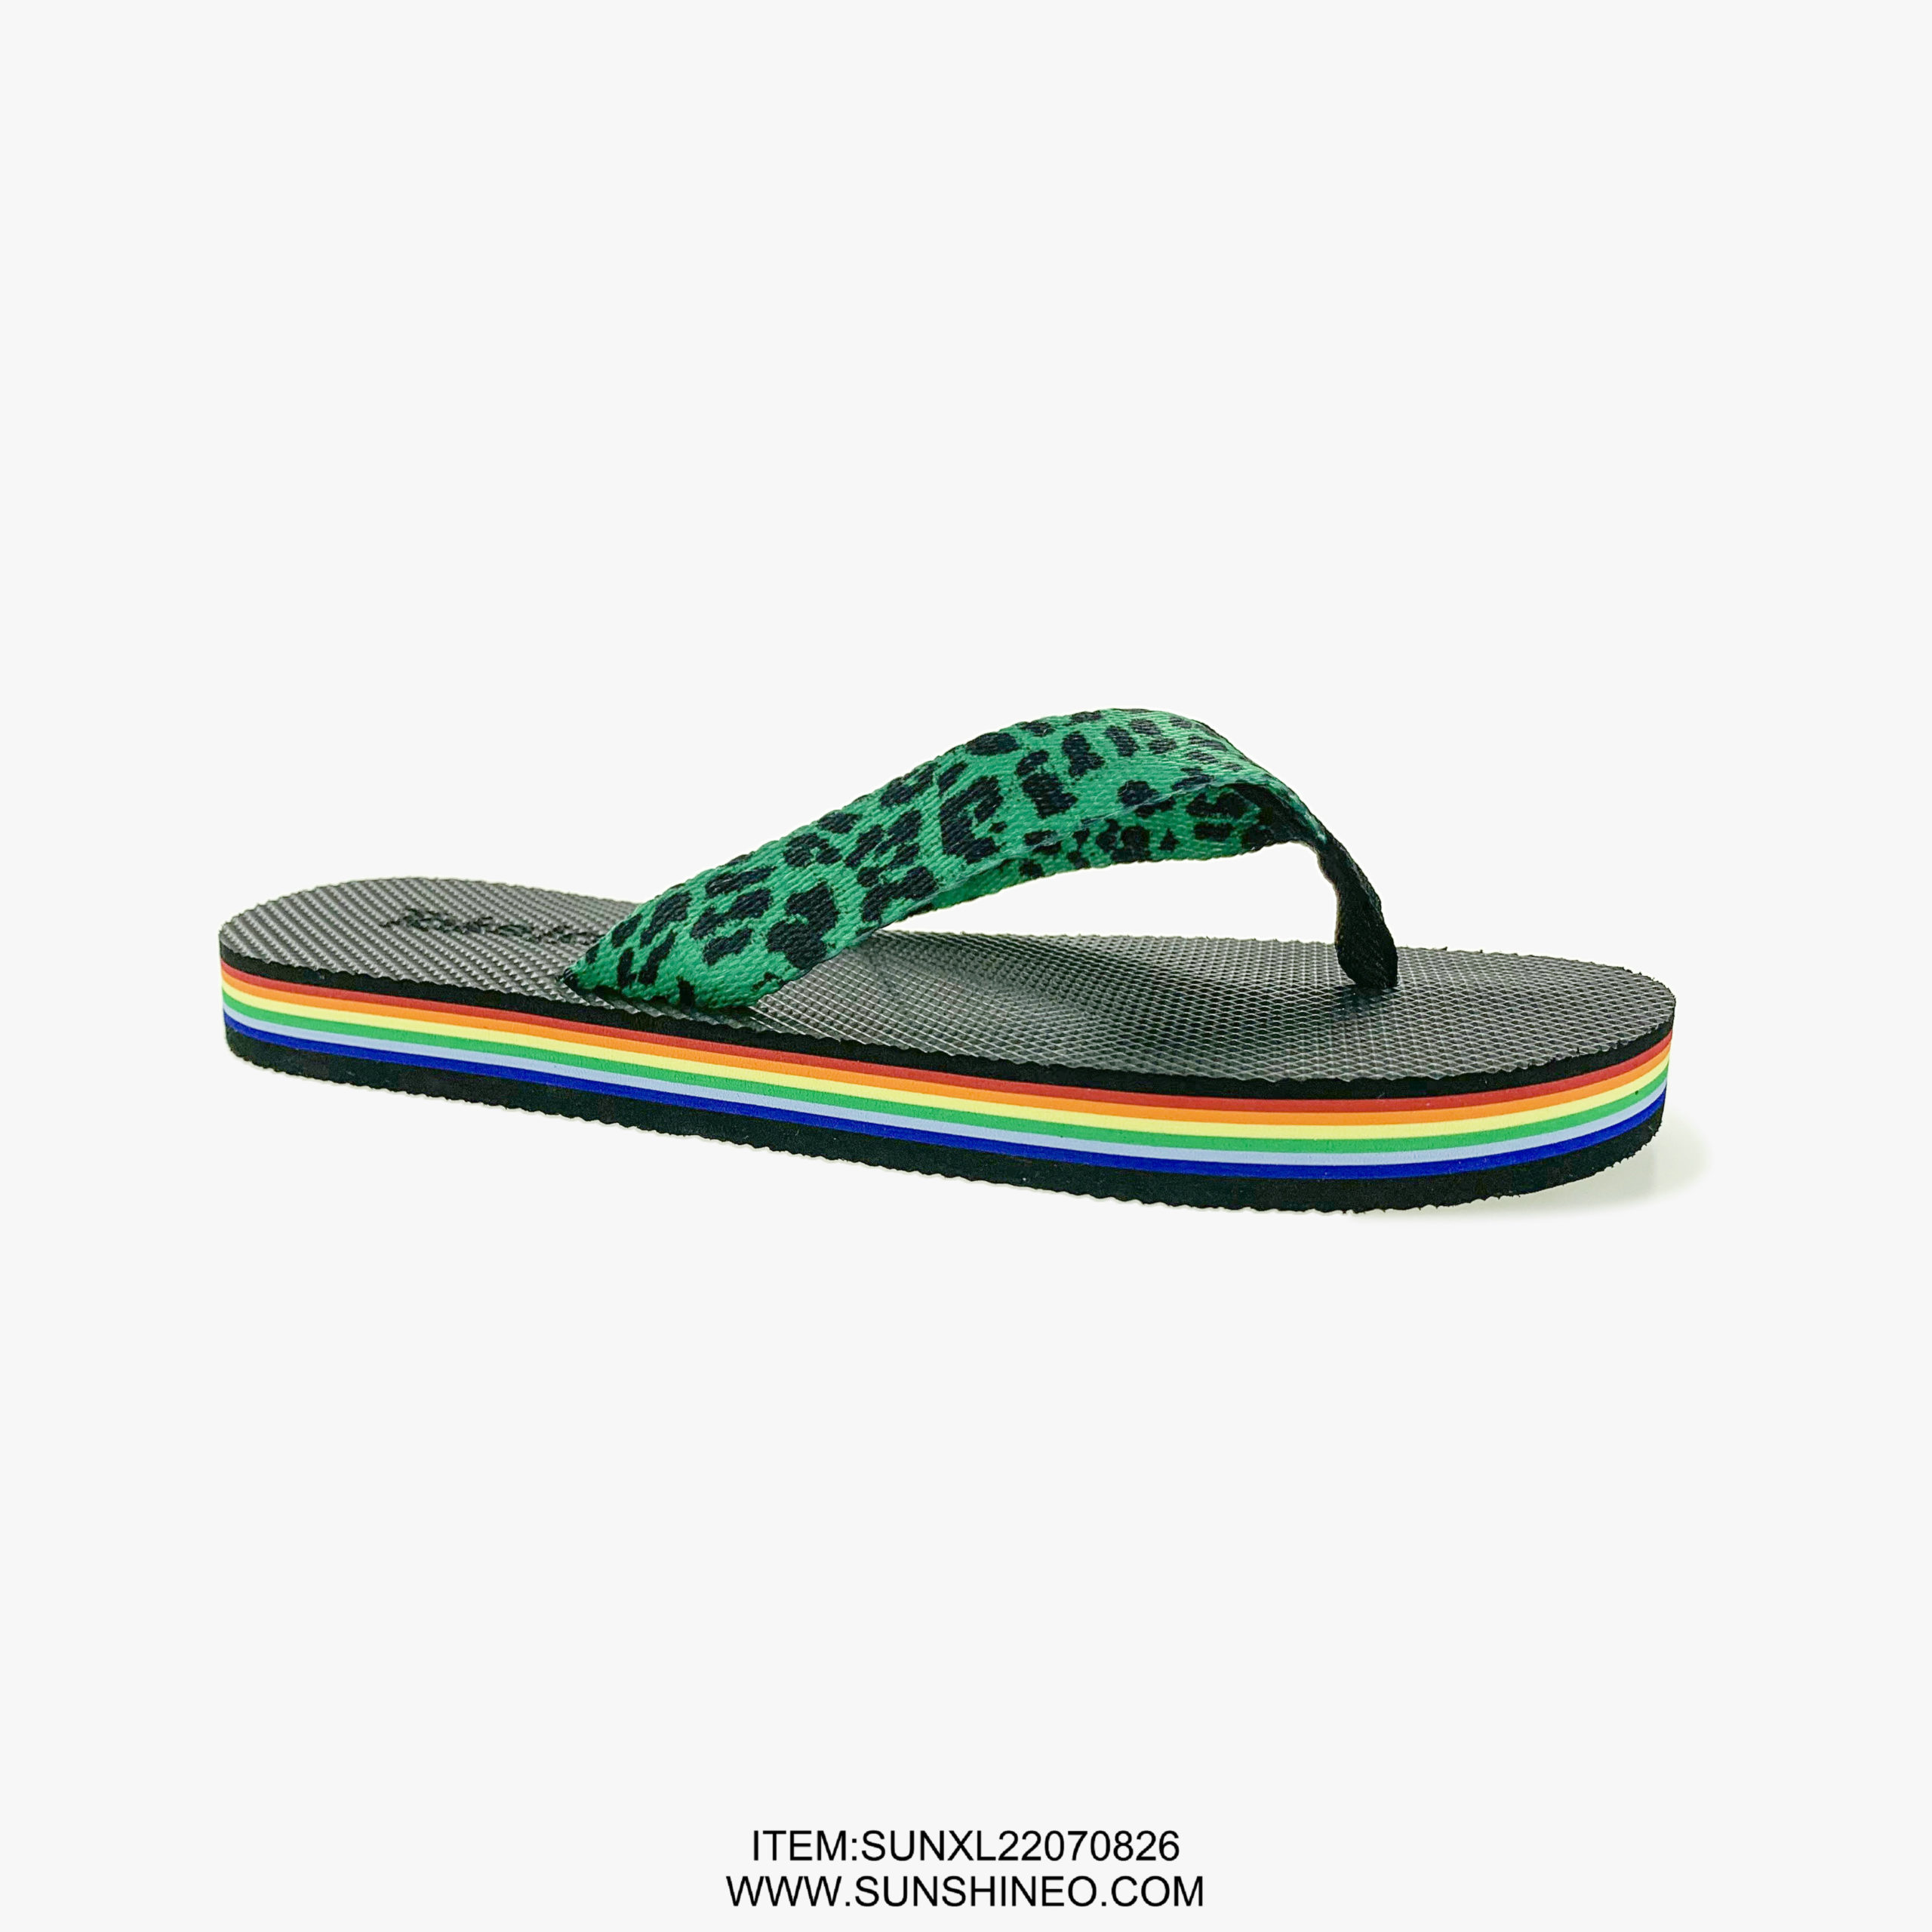 SUNXL22070826 flip flop sandals